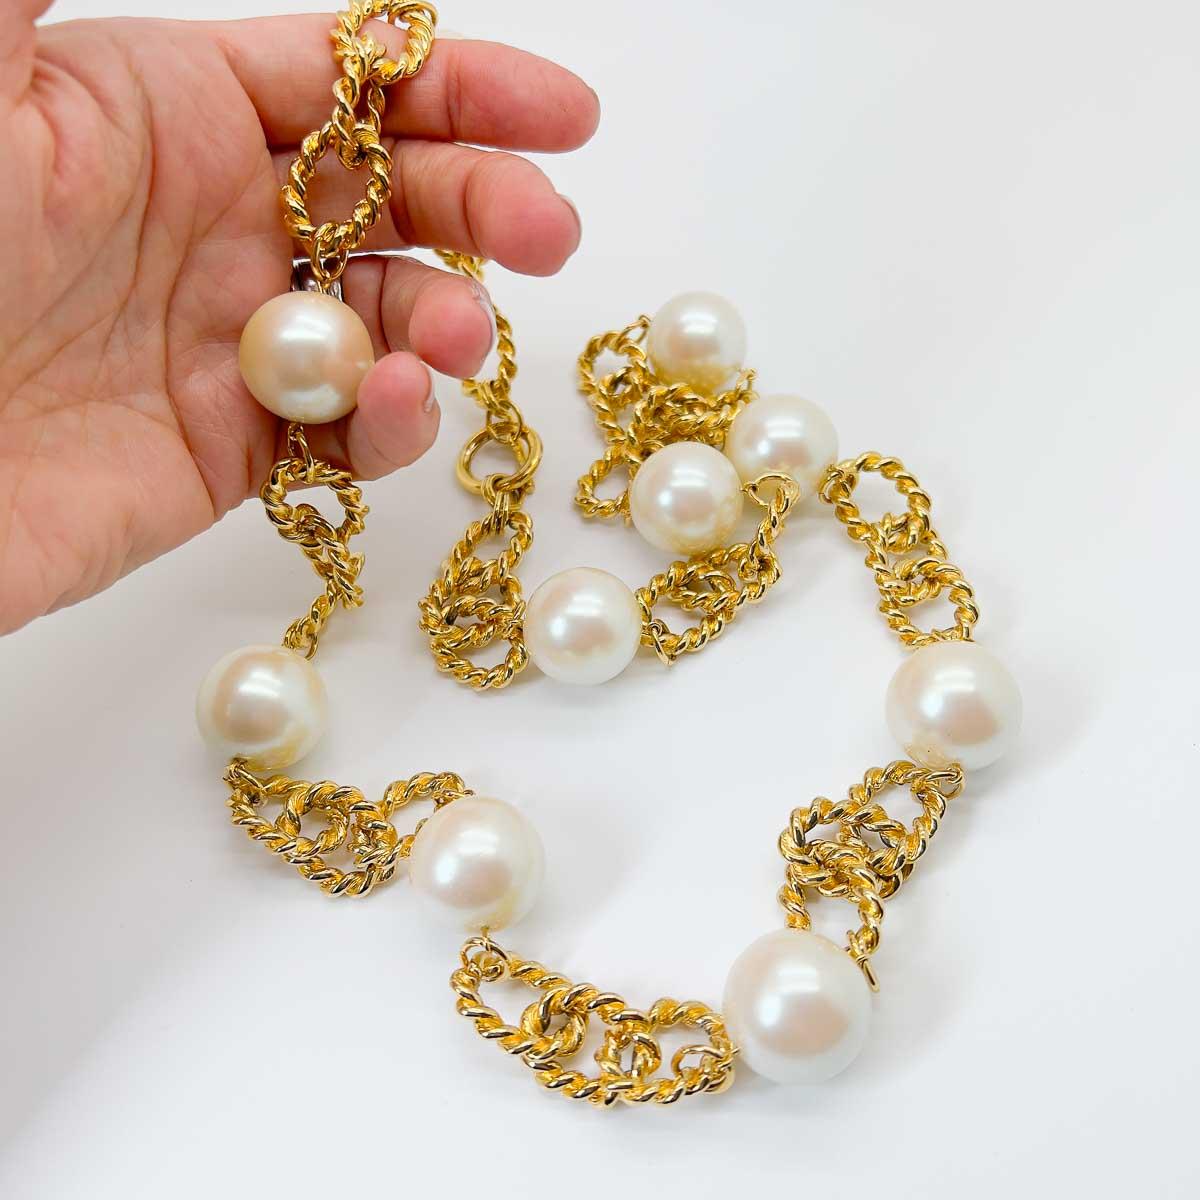 Un collier vintage à chaîne de perles surdimensionnées. Des perles gigantesques ponctuent une chaîne de corde à maillons ouverts, terminée par un fermoir à bascule. La pièce intemporelle parfaite qui est à la fois chic et avant-gardiste.

Une beauté